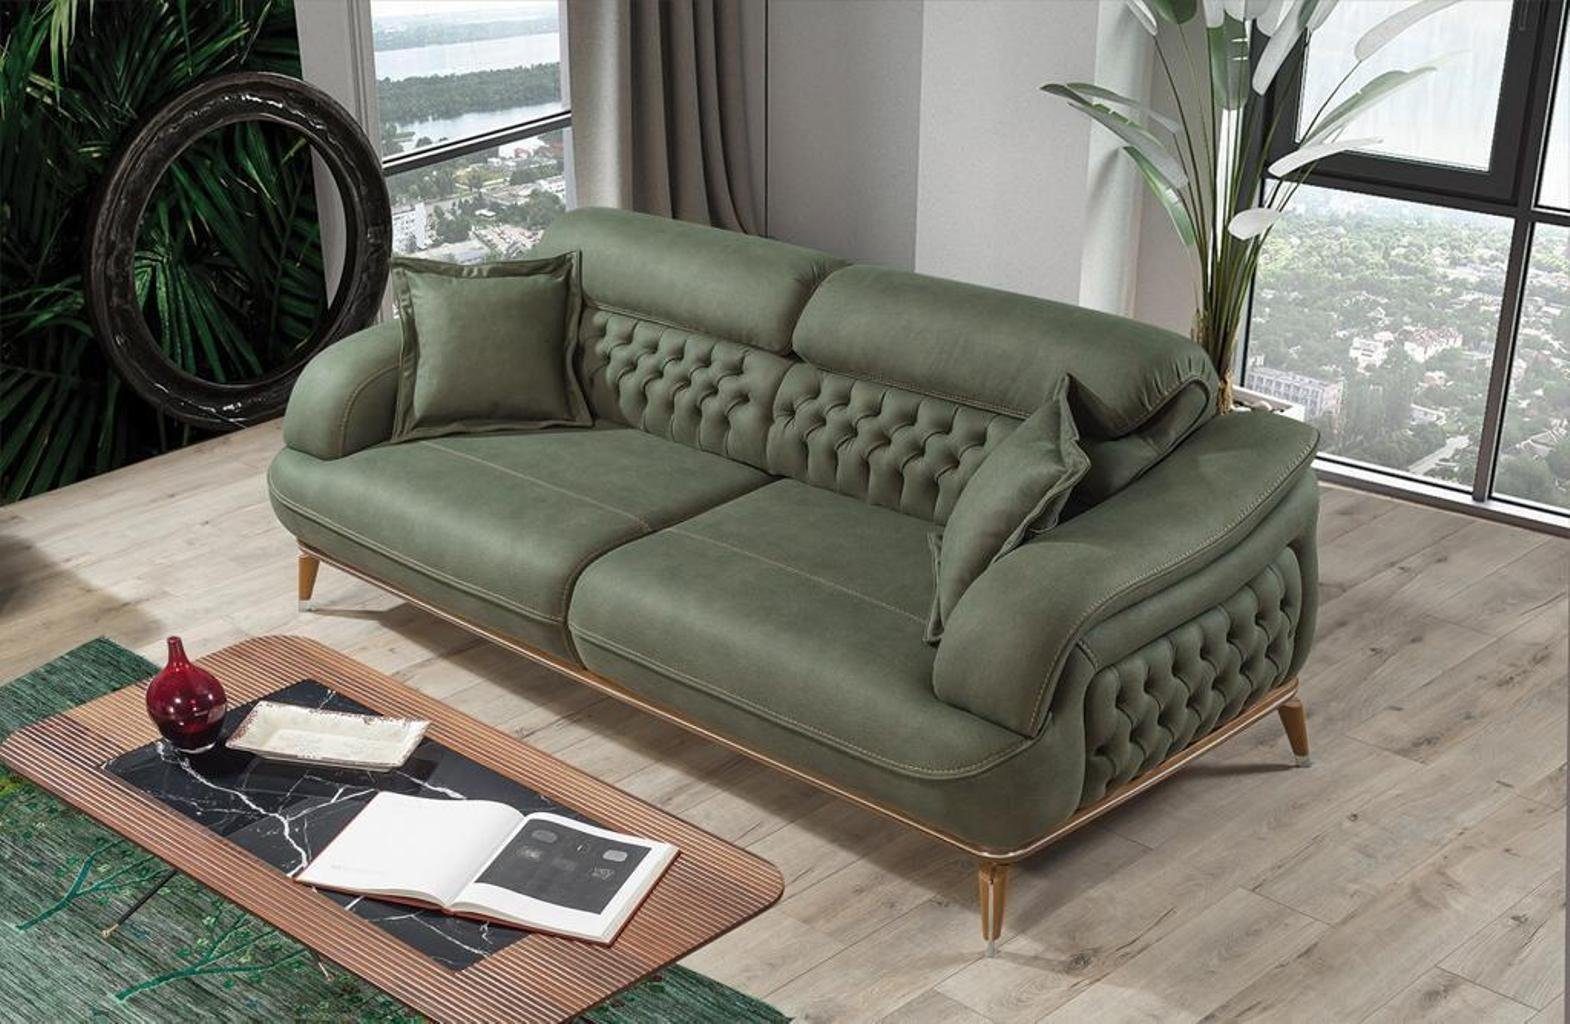 Dreisitzer Modern Sofa Made Dreisitzer Europa Luxus Teile, Möbel, Einrichtung in Wohnzimmer JVmoebel 1 Sofa